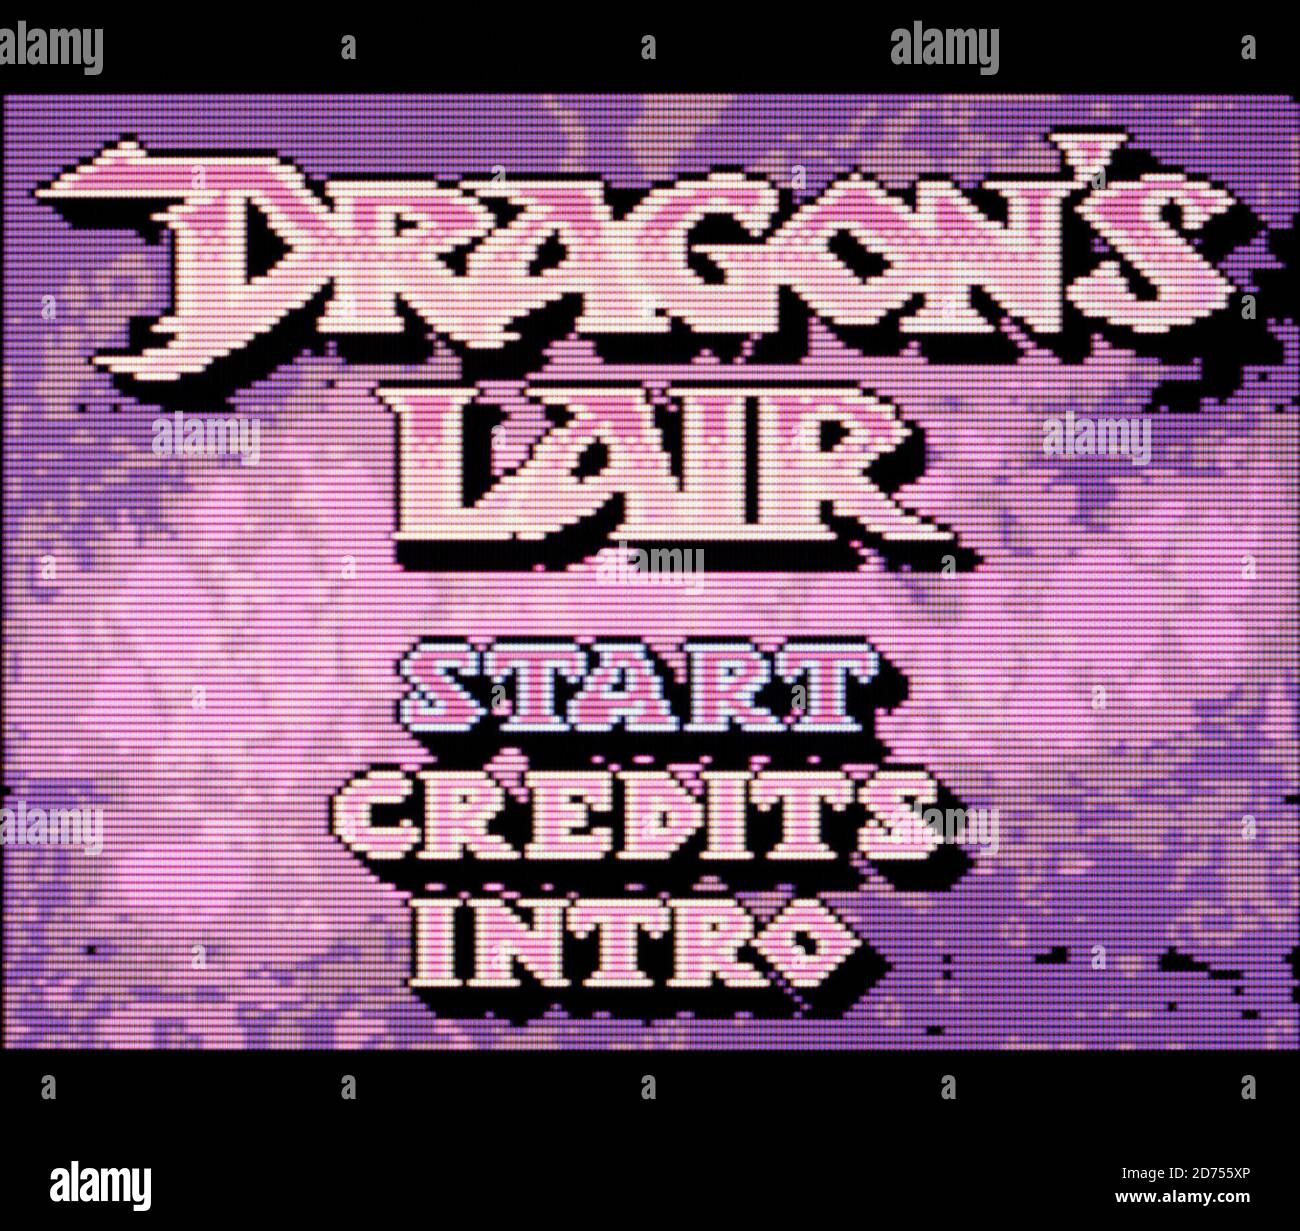 Dragons Lair Banque D Image Et Photos Alamy